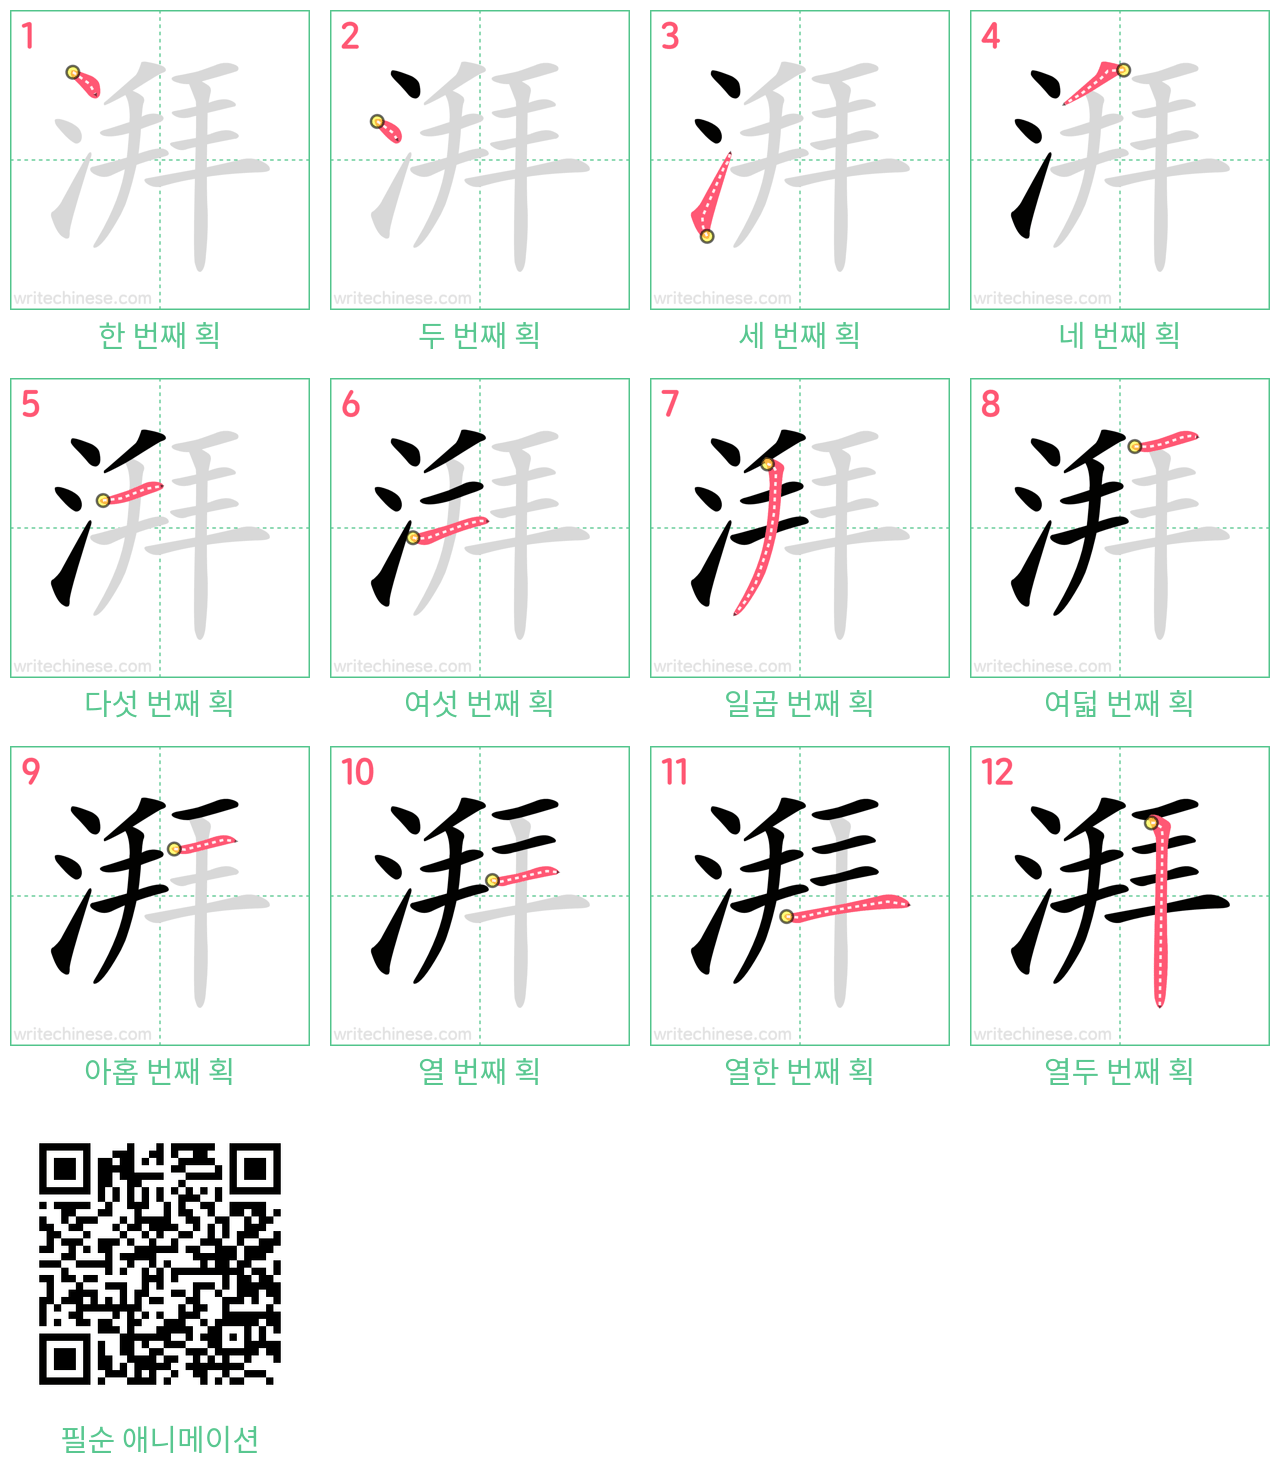 湃 step-by-step stroke order diagrams